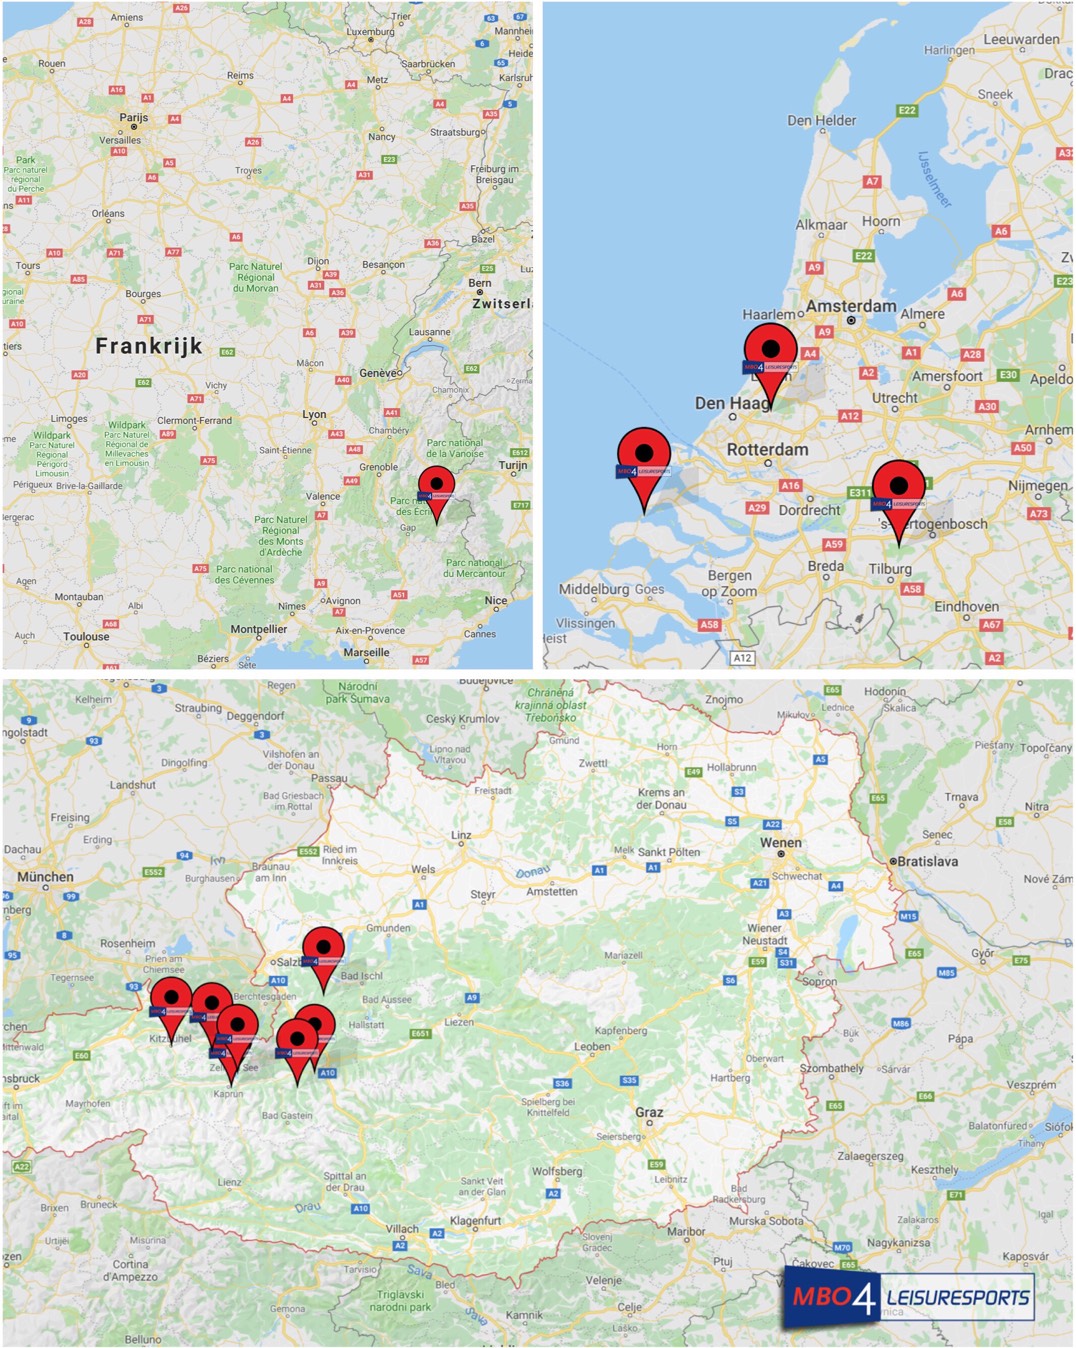 mbo4leisuresports-opleidingslocaties-frankrijk-nederland-oostenrijk-mbo-opleiding-sport-buitenland